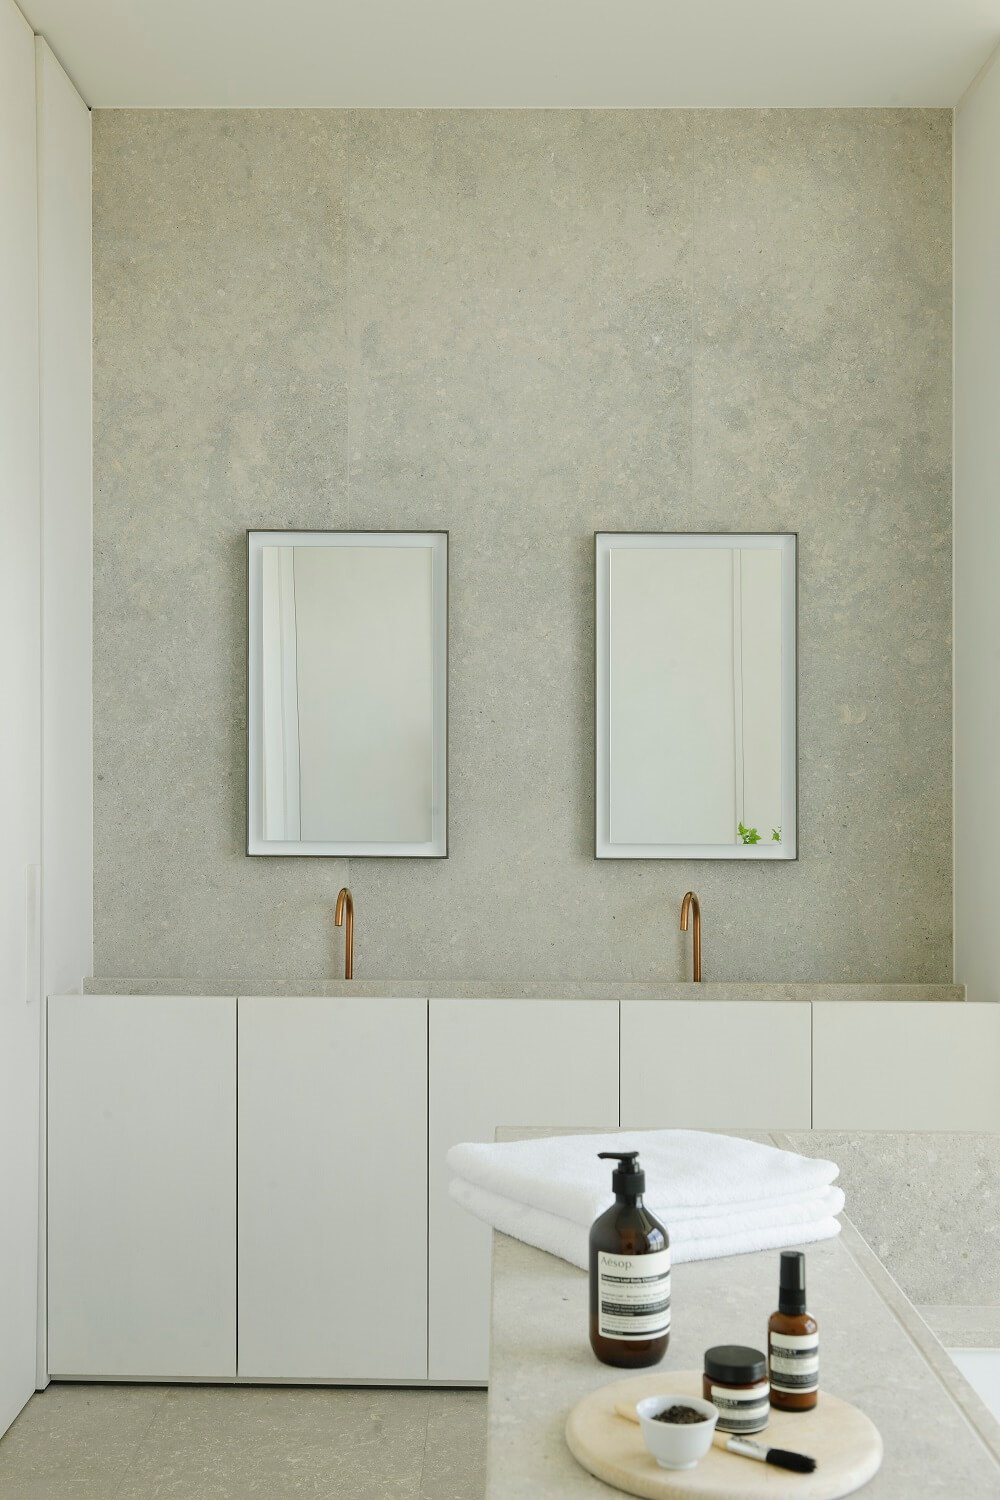 Mueble de baño blanco con grifería encastrada dorada dos espejos y pared gris.